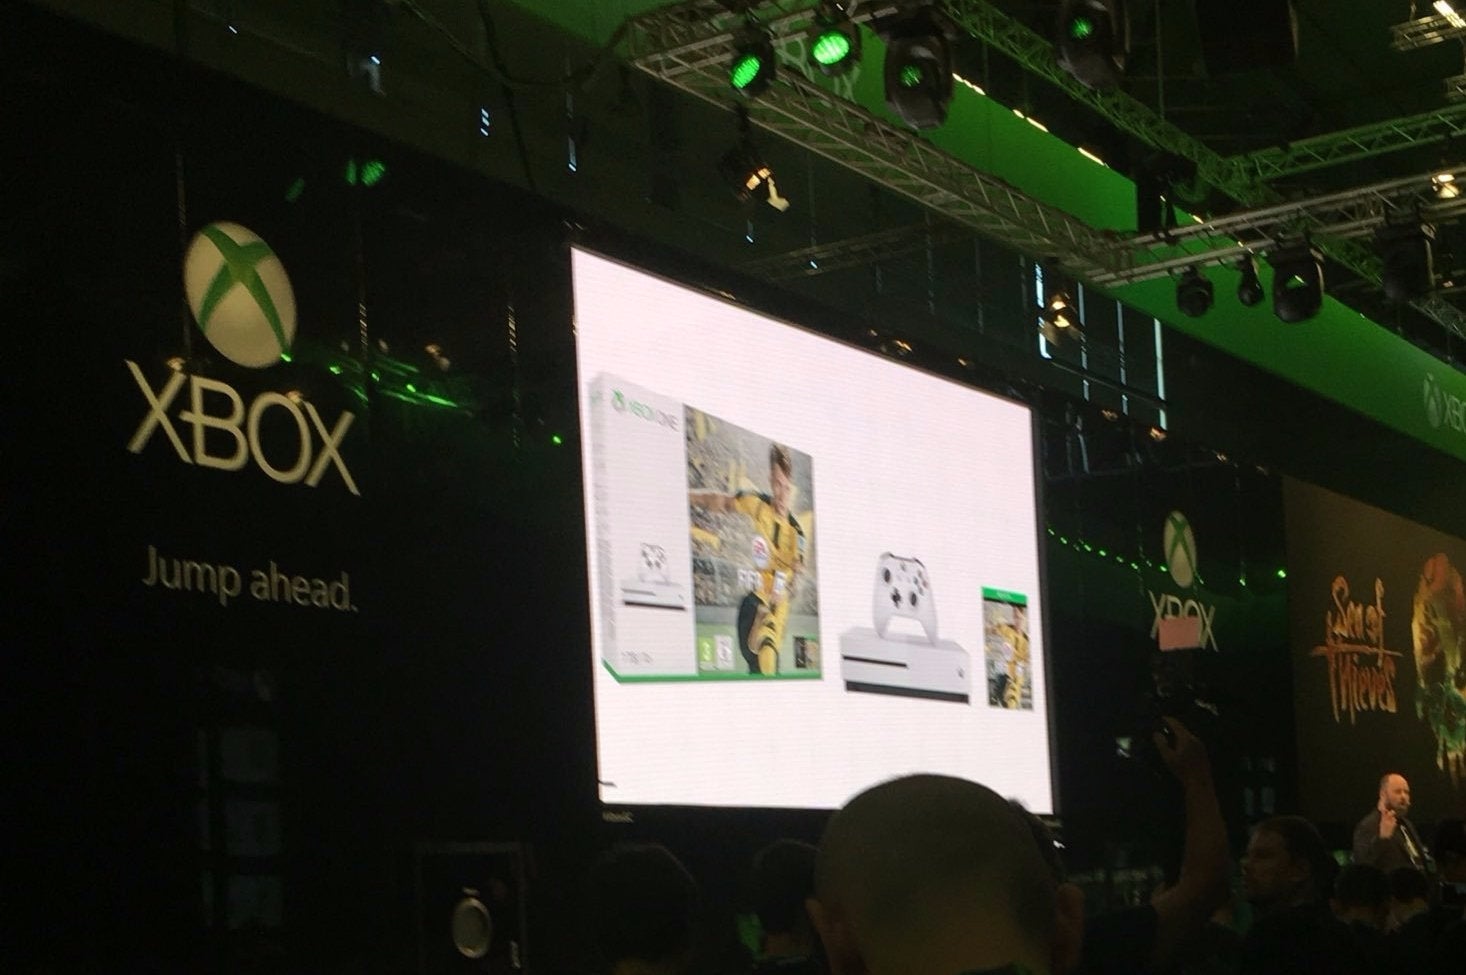 Image for Dvě nová balení Xbox One S